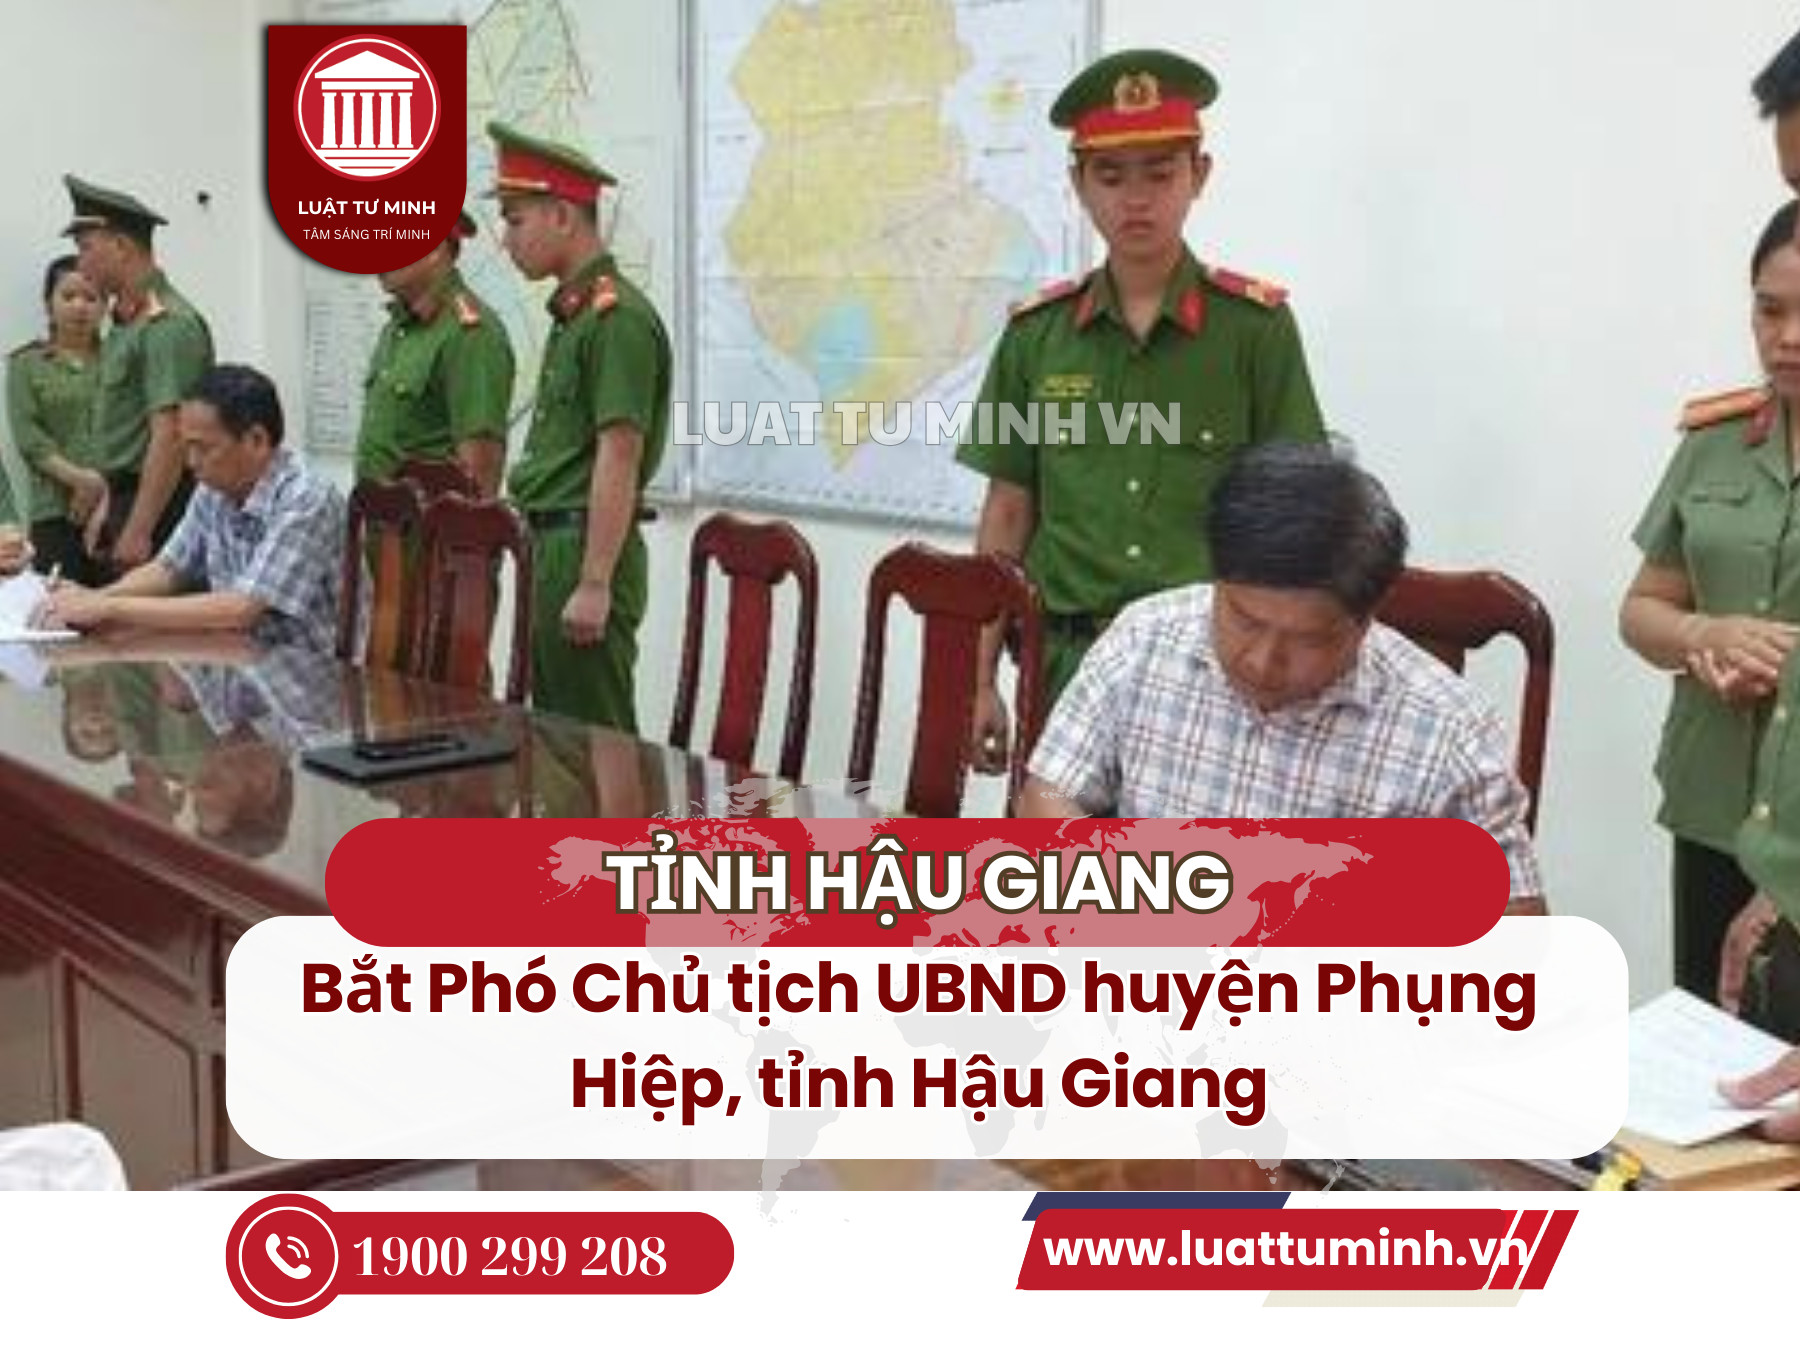 Bắt Phó Chủ tịch UBND huyện Phụng Hiệp, tỉnh Hậu Giang - Luật Tư Minh